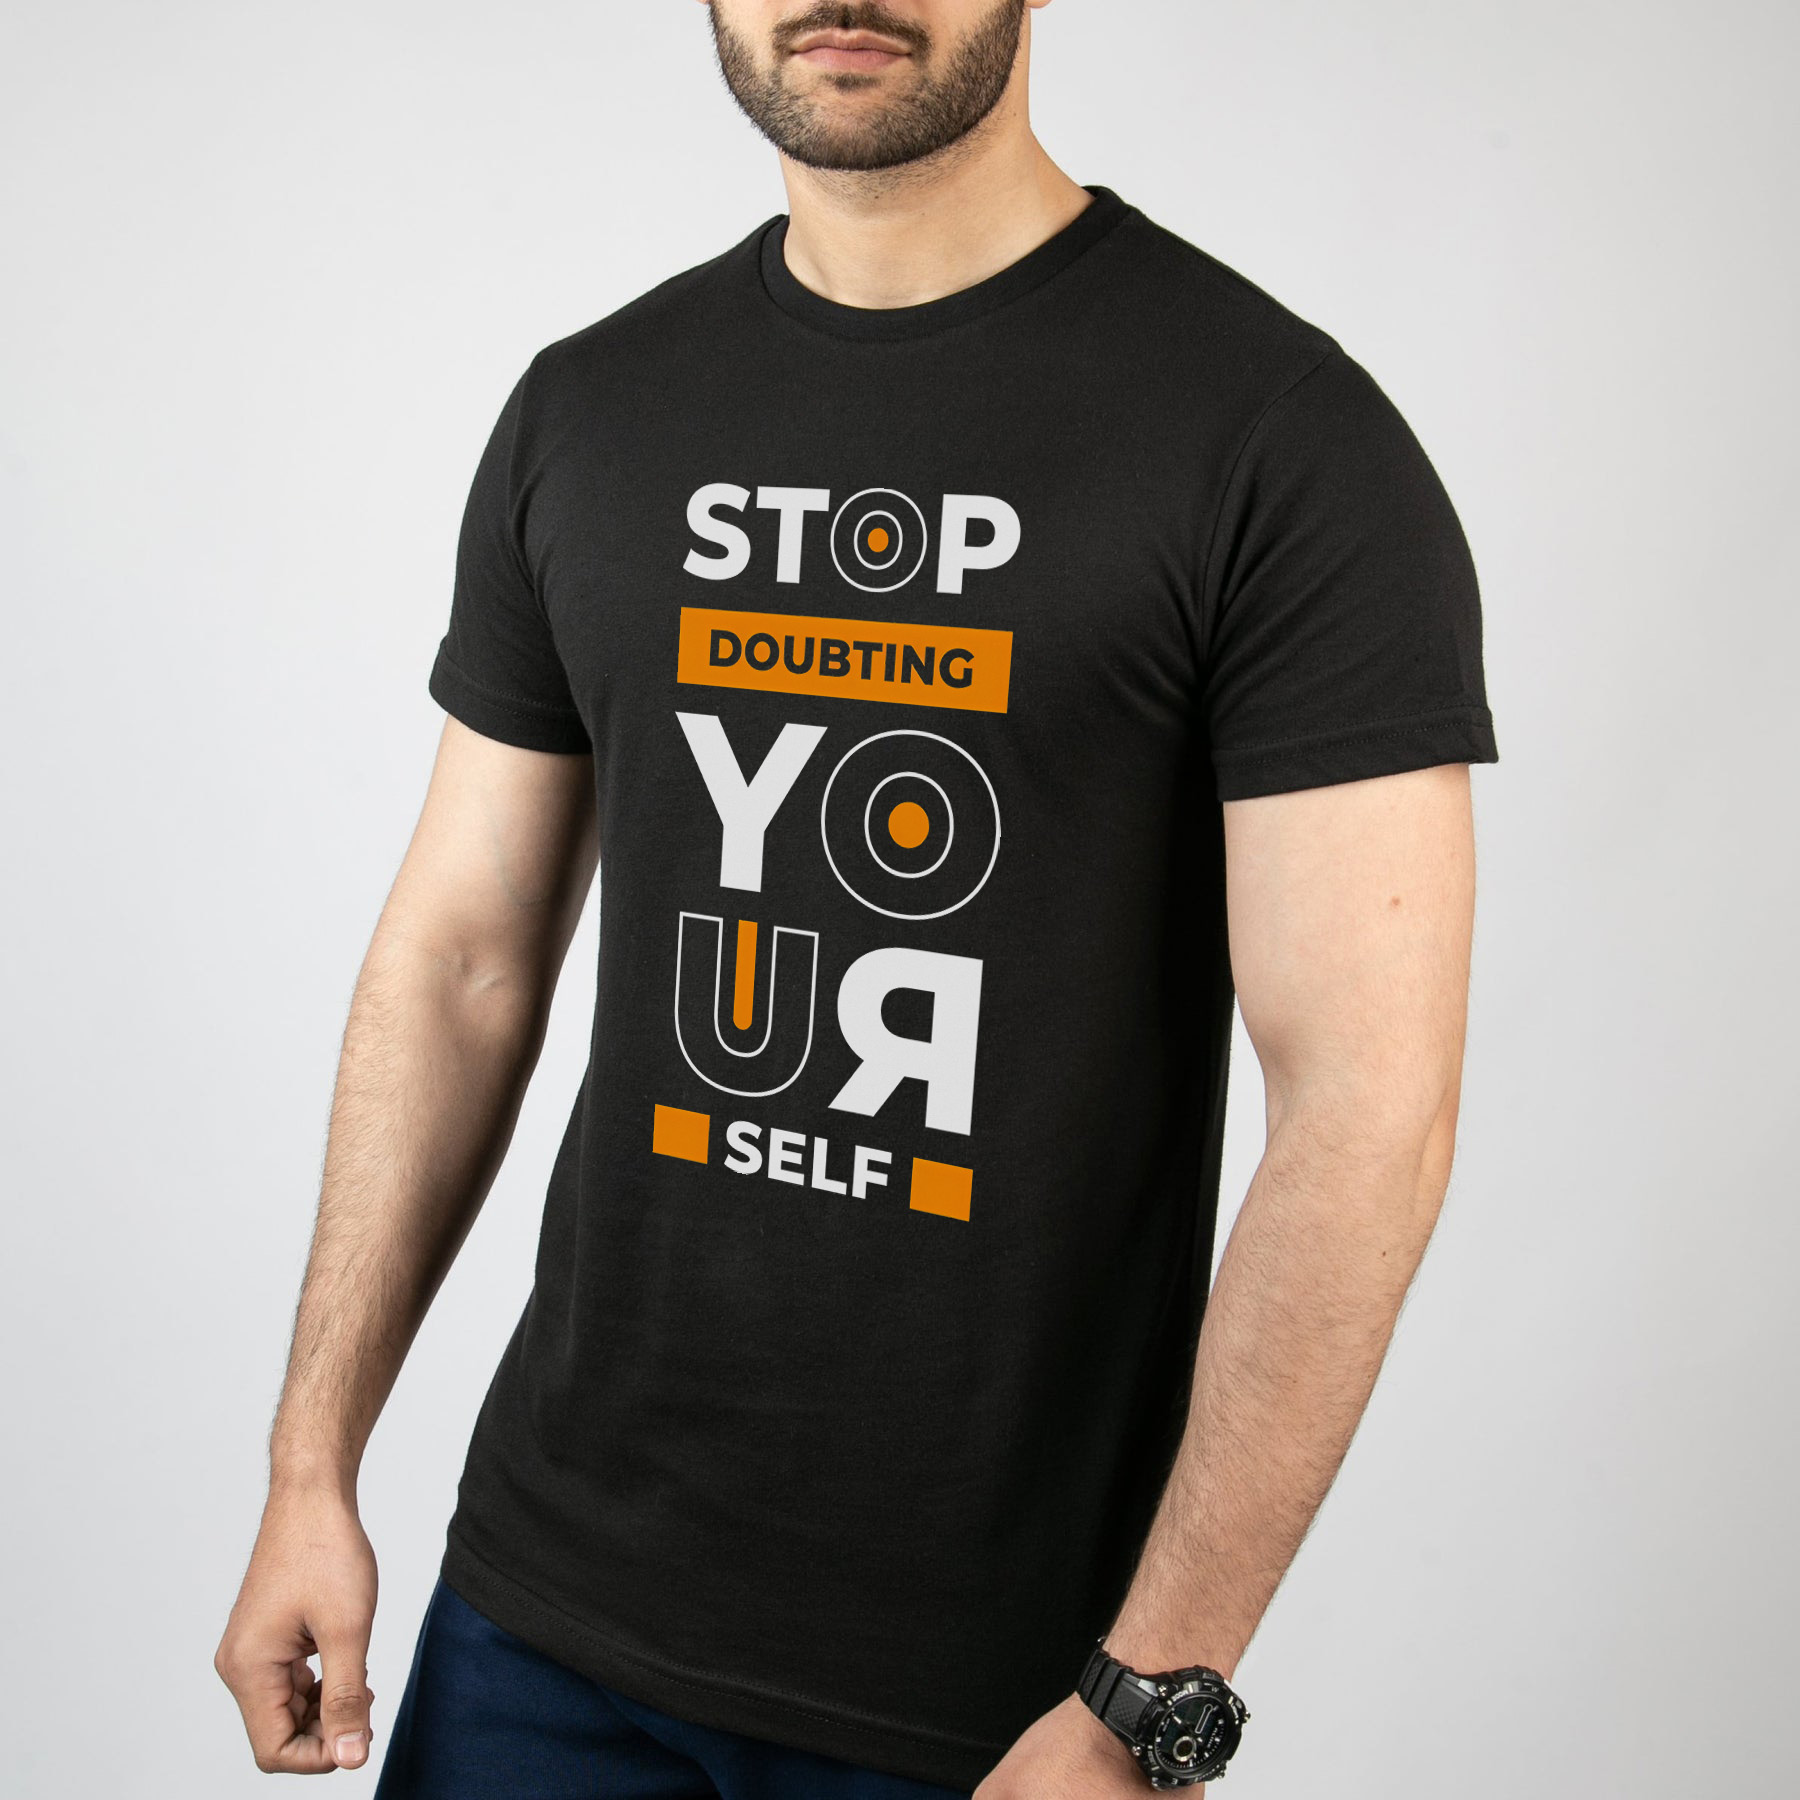 تی شرت آستین کوتاه مردانه مدل نوشته Stop doubting yourself کد T008